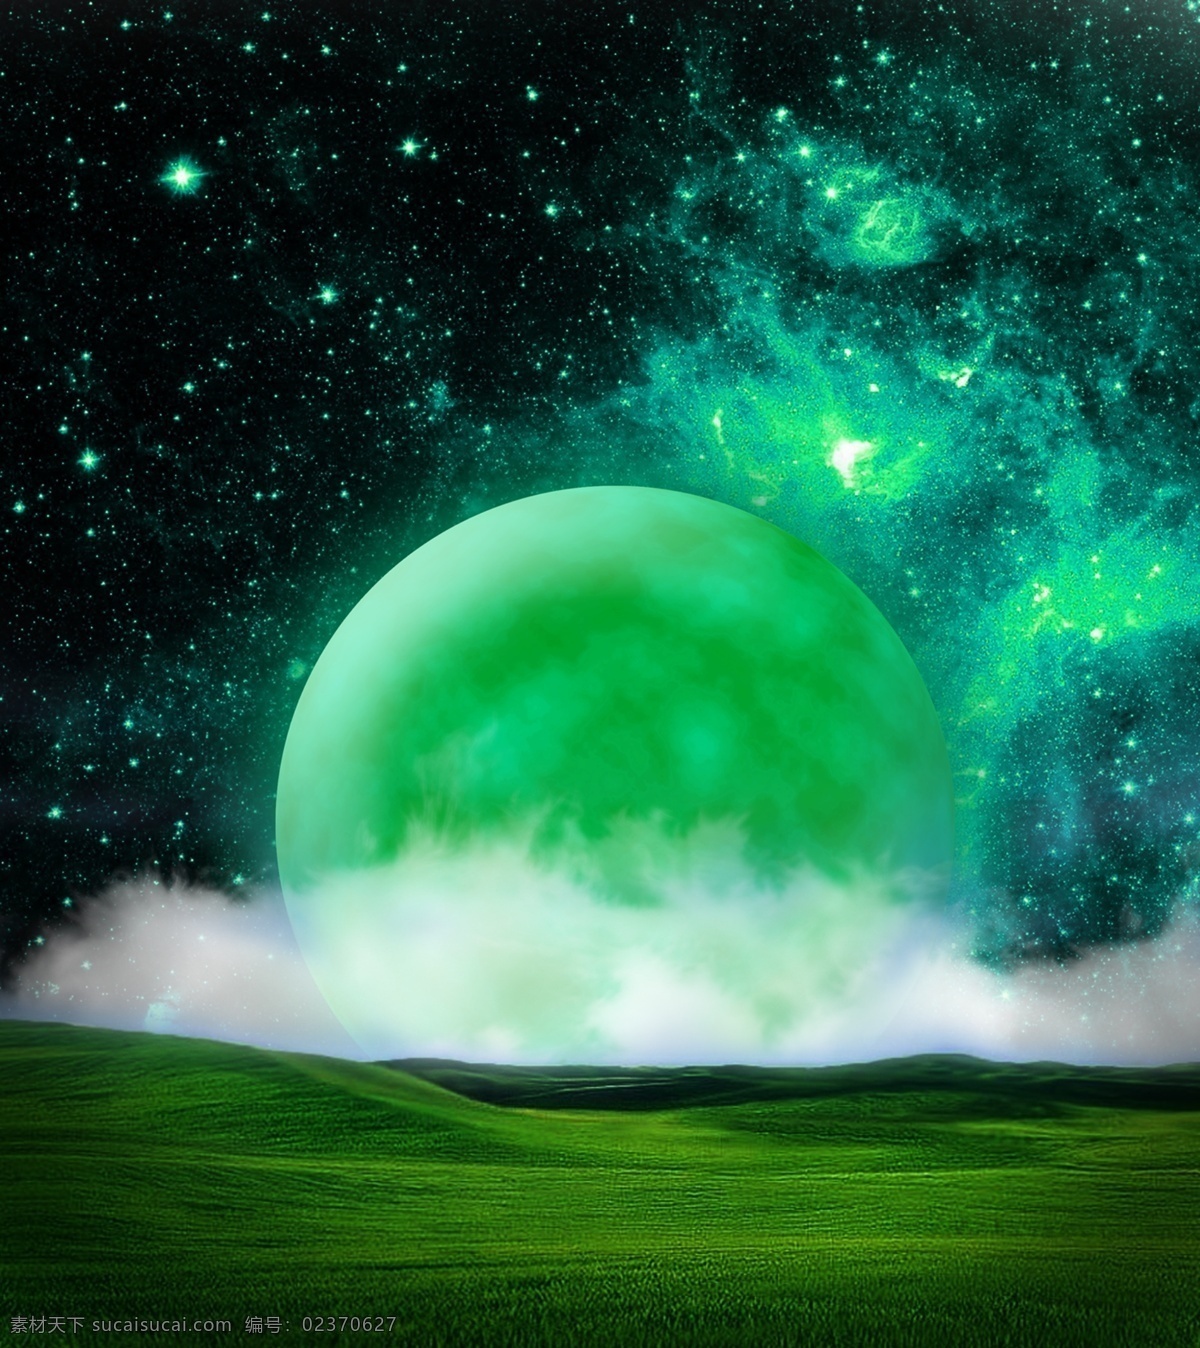 夜空神秘插画 神秘 幽静 夜空 绿色 带来 种 中秋 安静 清新 压抑 爆发